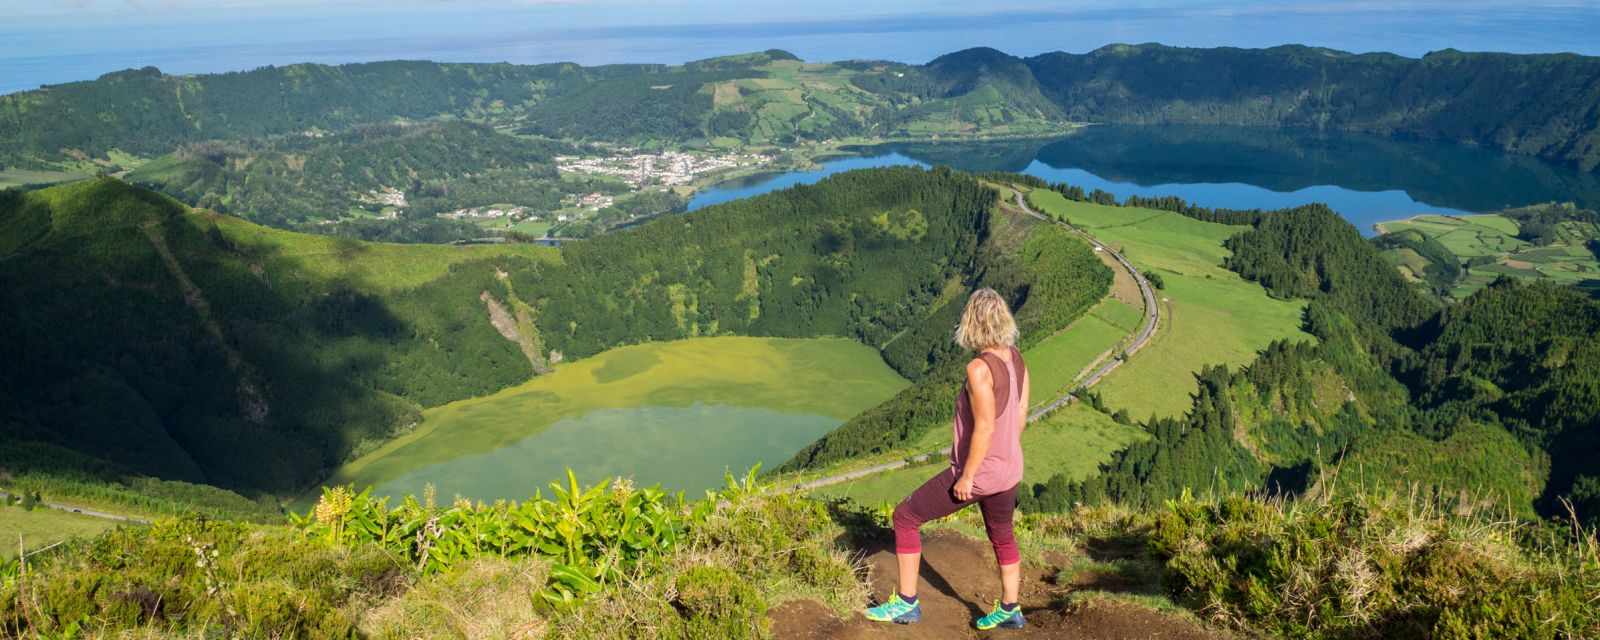 Miradouro da Boca do Inferno - Sete Cidades Azores